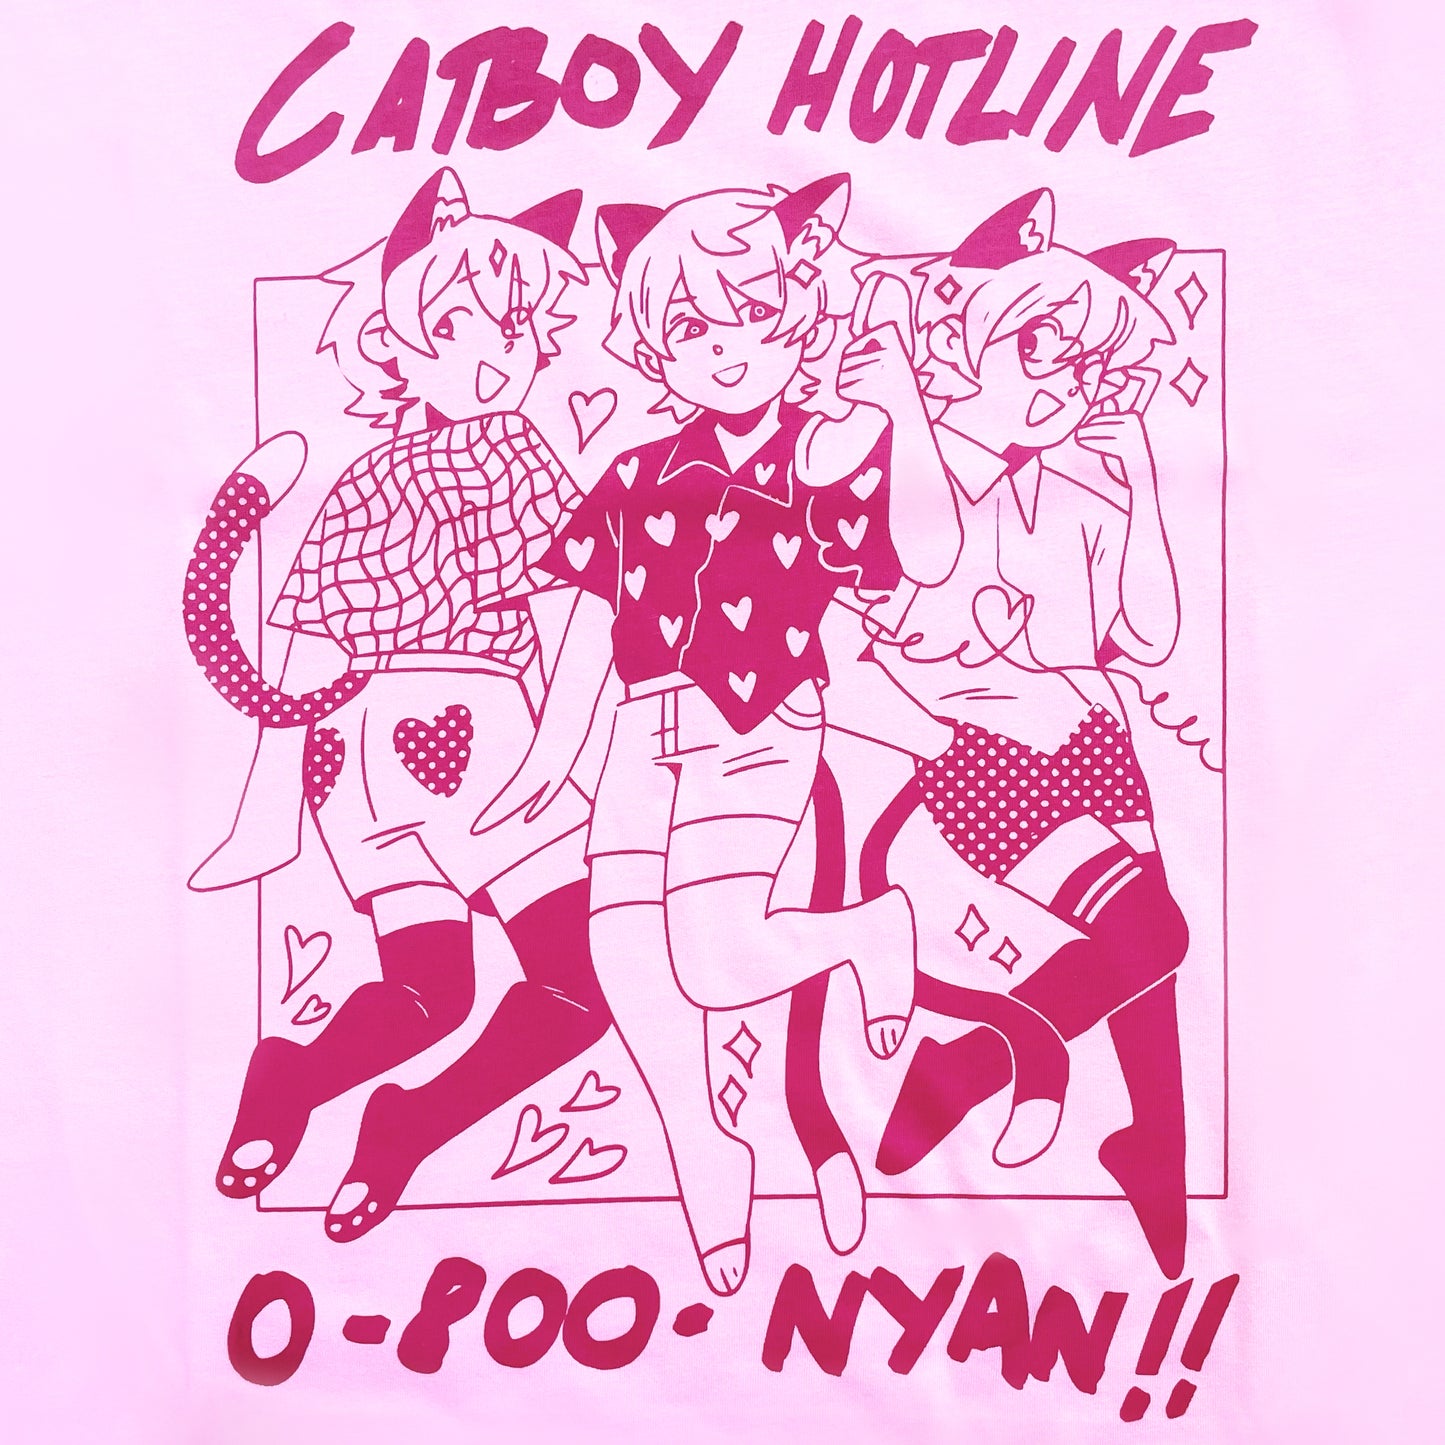 Catboy Hotline Tee